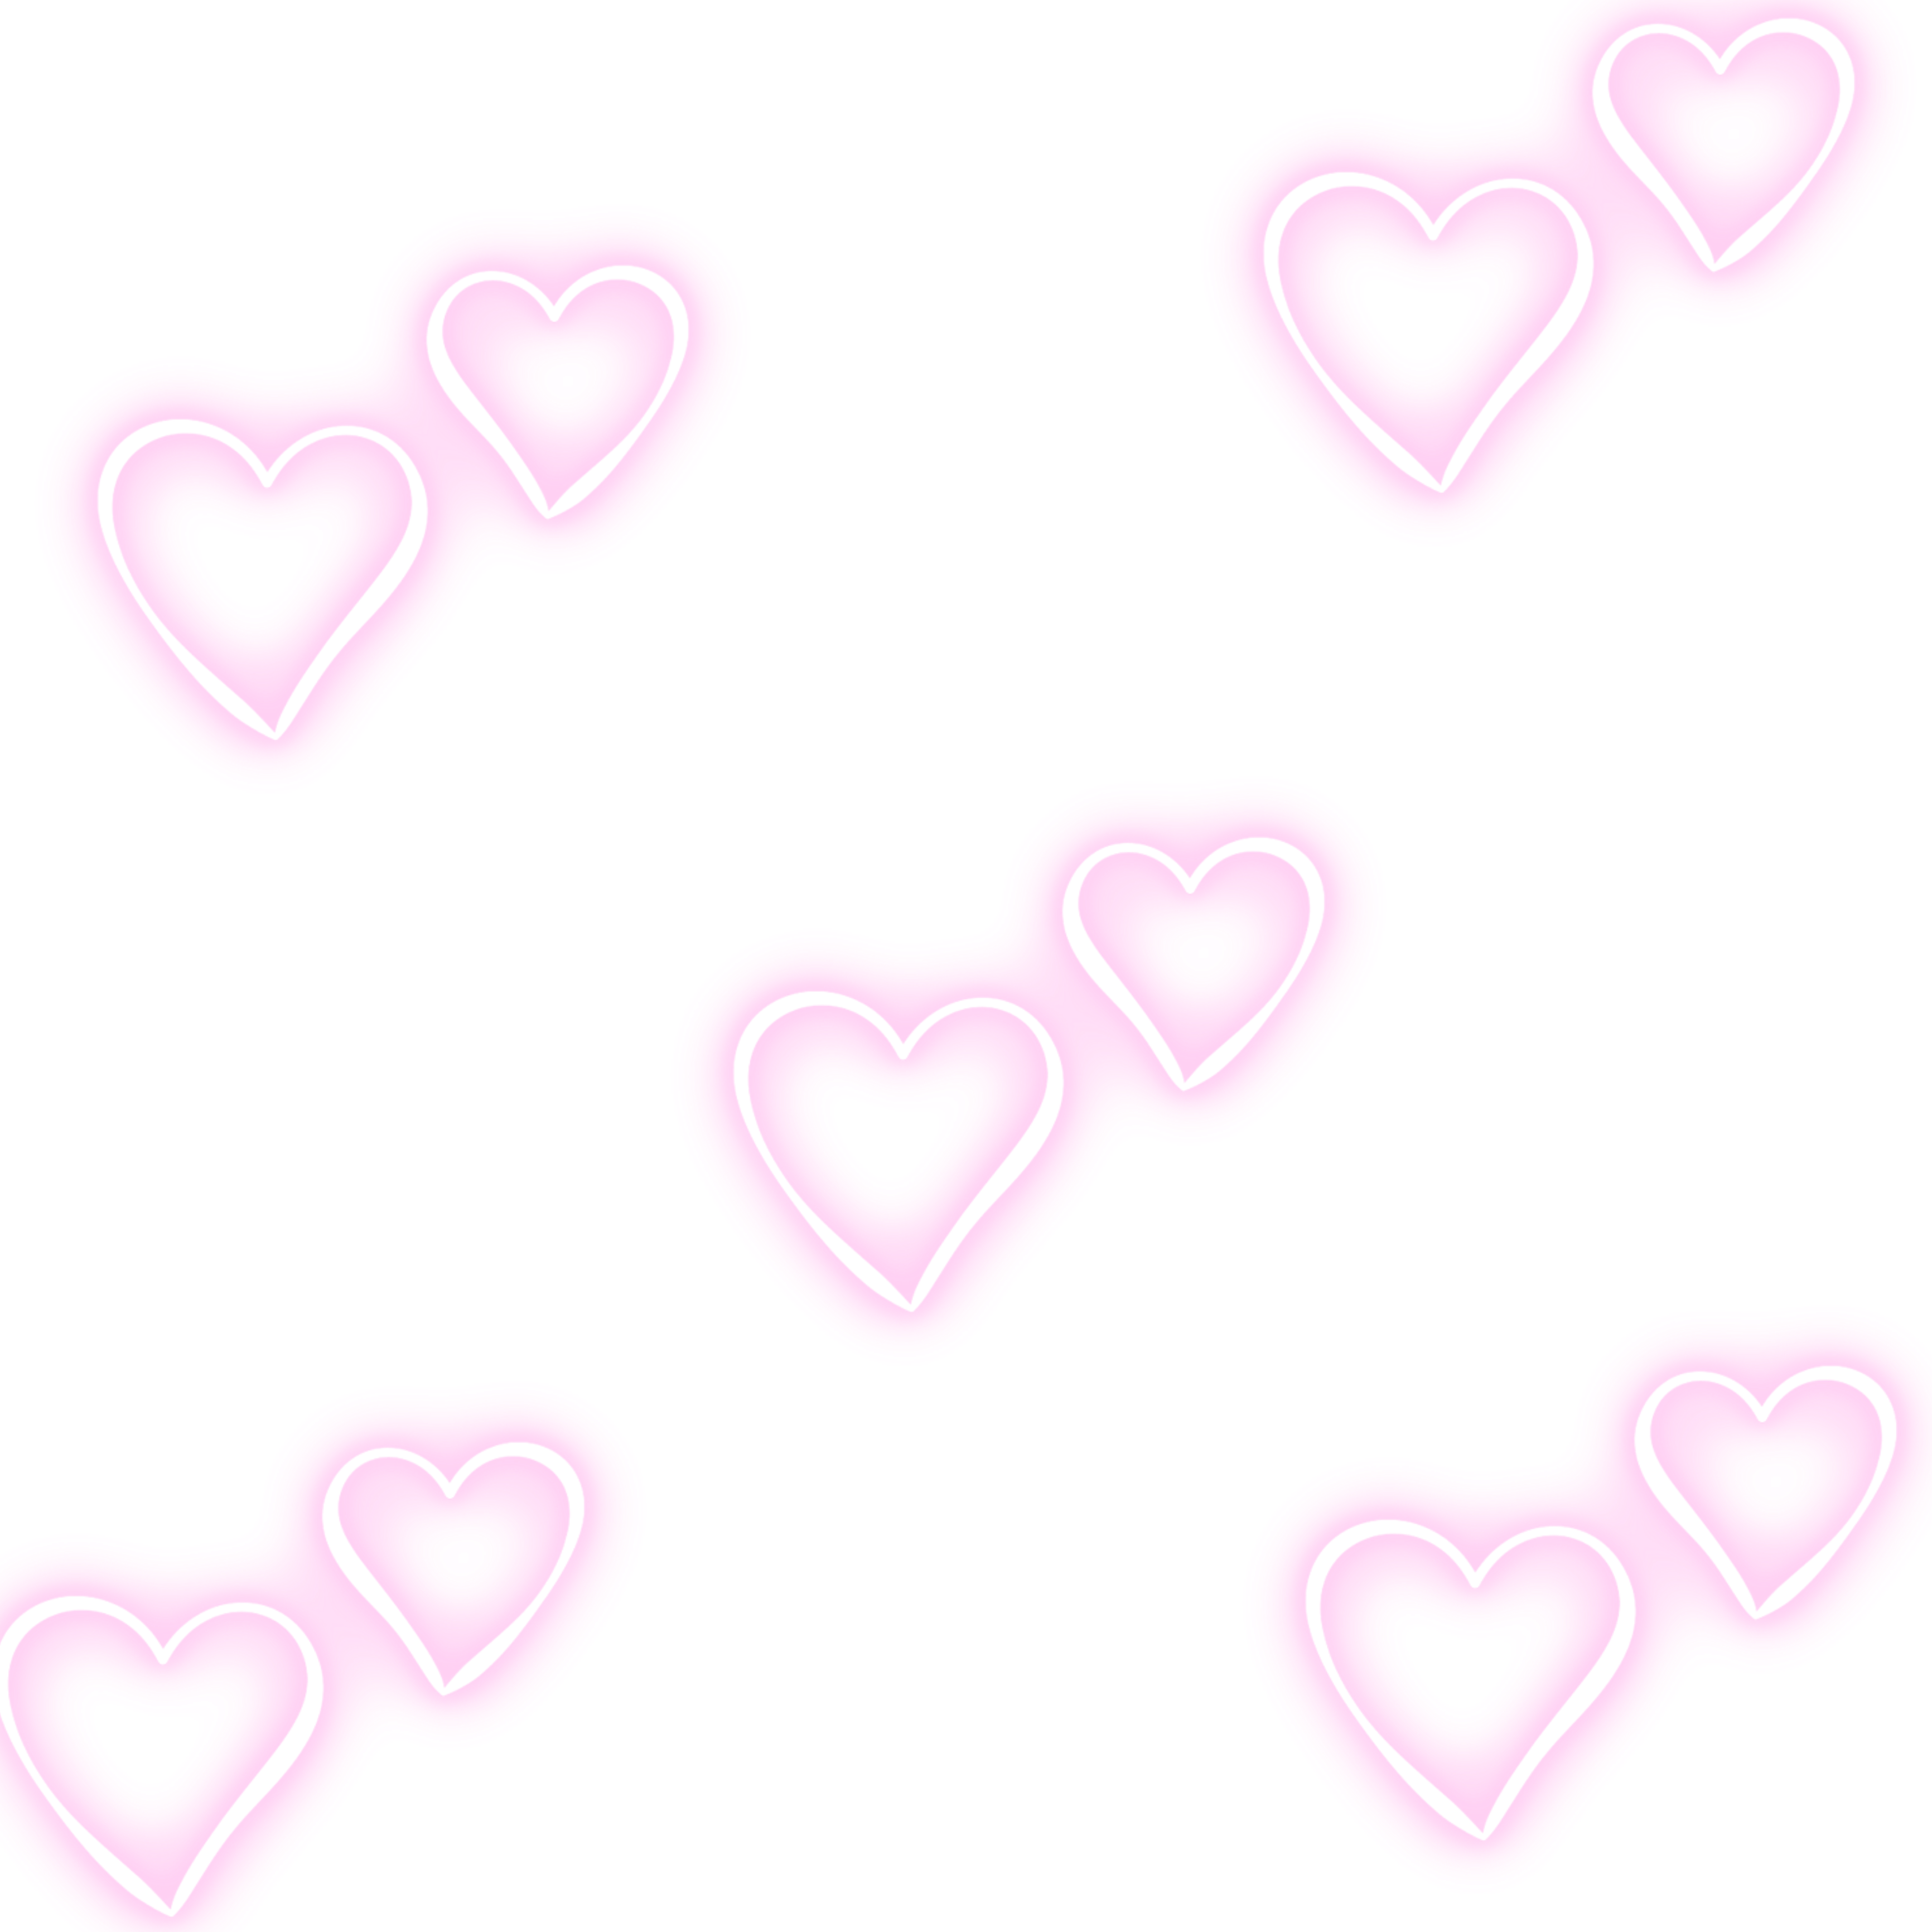 Valentine Y2K Heart Sticker: Tình yêu đang rực rỡ trong mùa Lễ tình nhân và những chiếc nhãn trái tim Y2K này chắc chắn sẽ khiến bạn say đắm. Khám phá những chấm bi đầy màu sắc và những nét ký họa tuyệt đẹp trên những chiếc nhãn trái tim đáng yêu này.